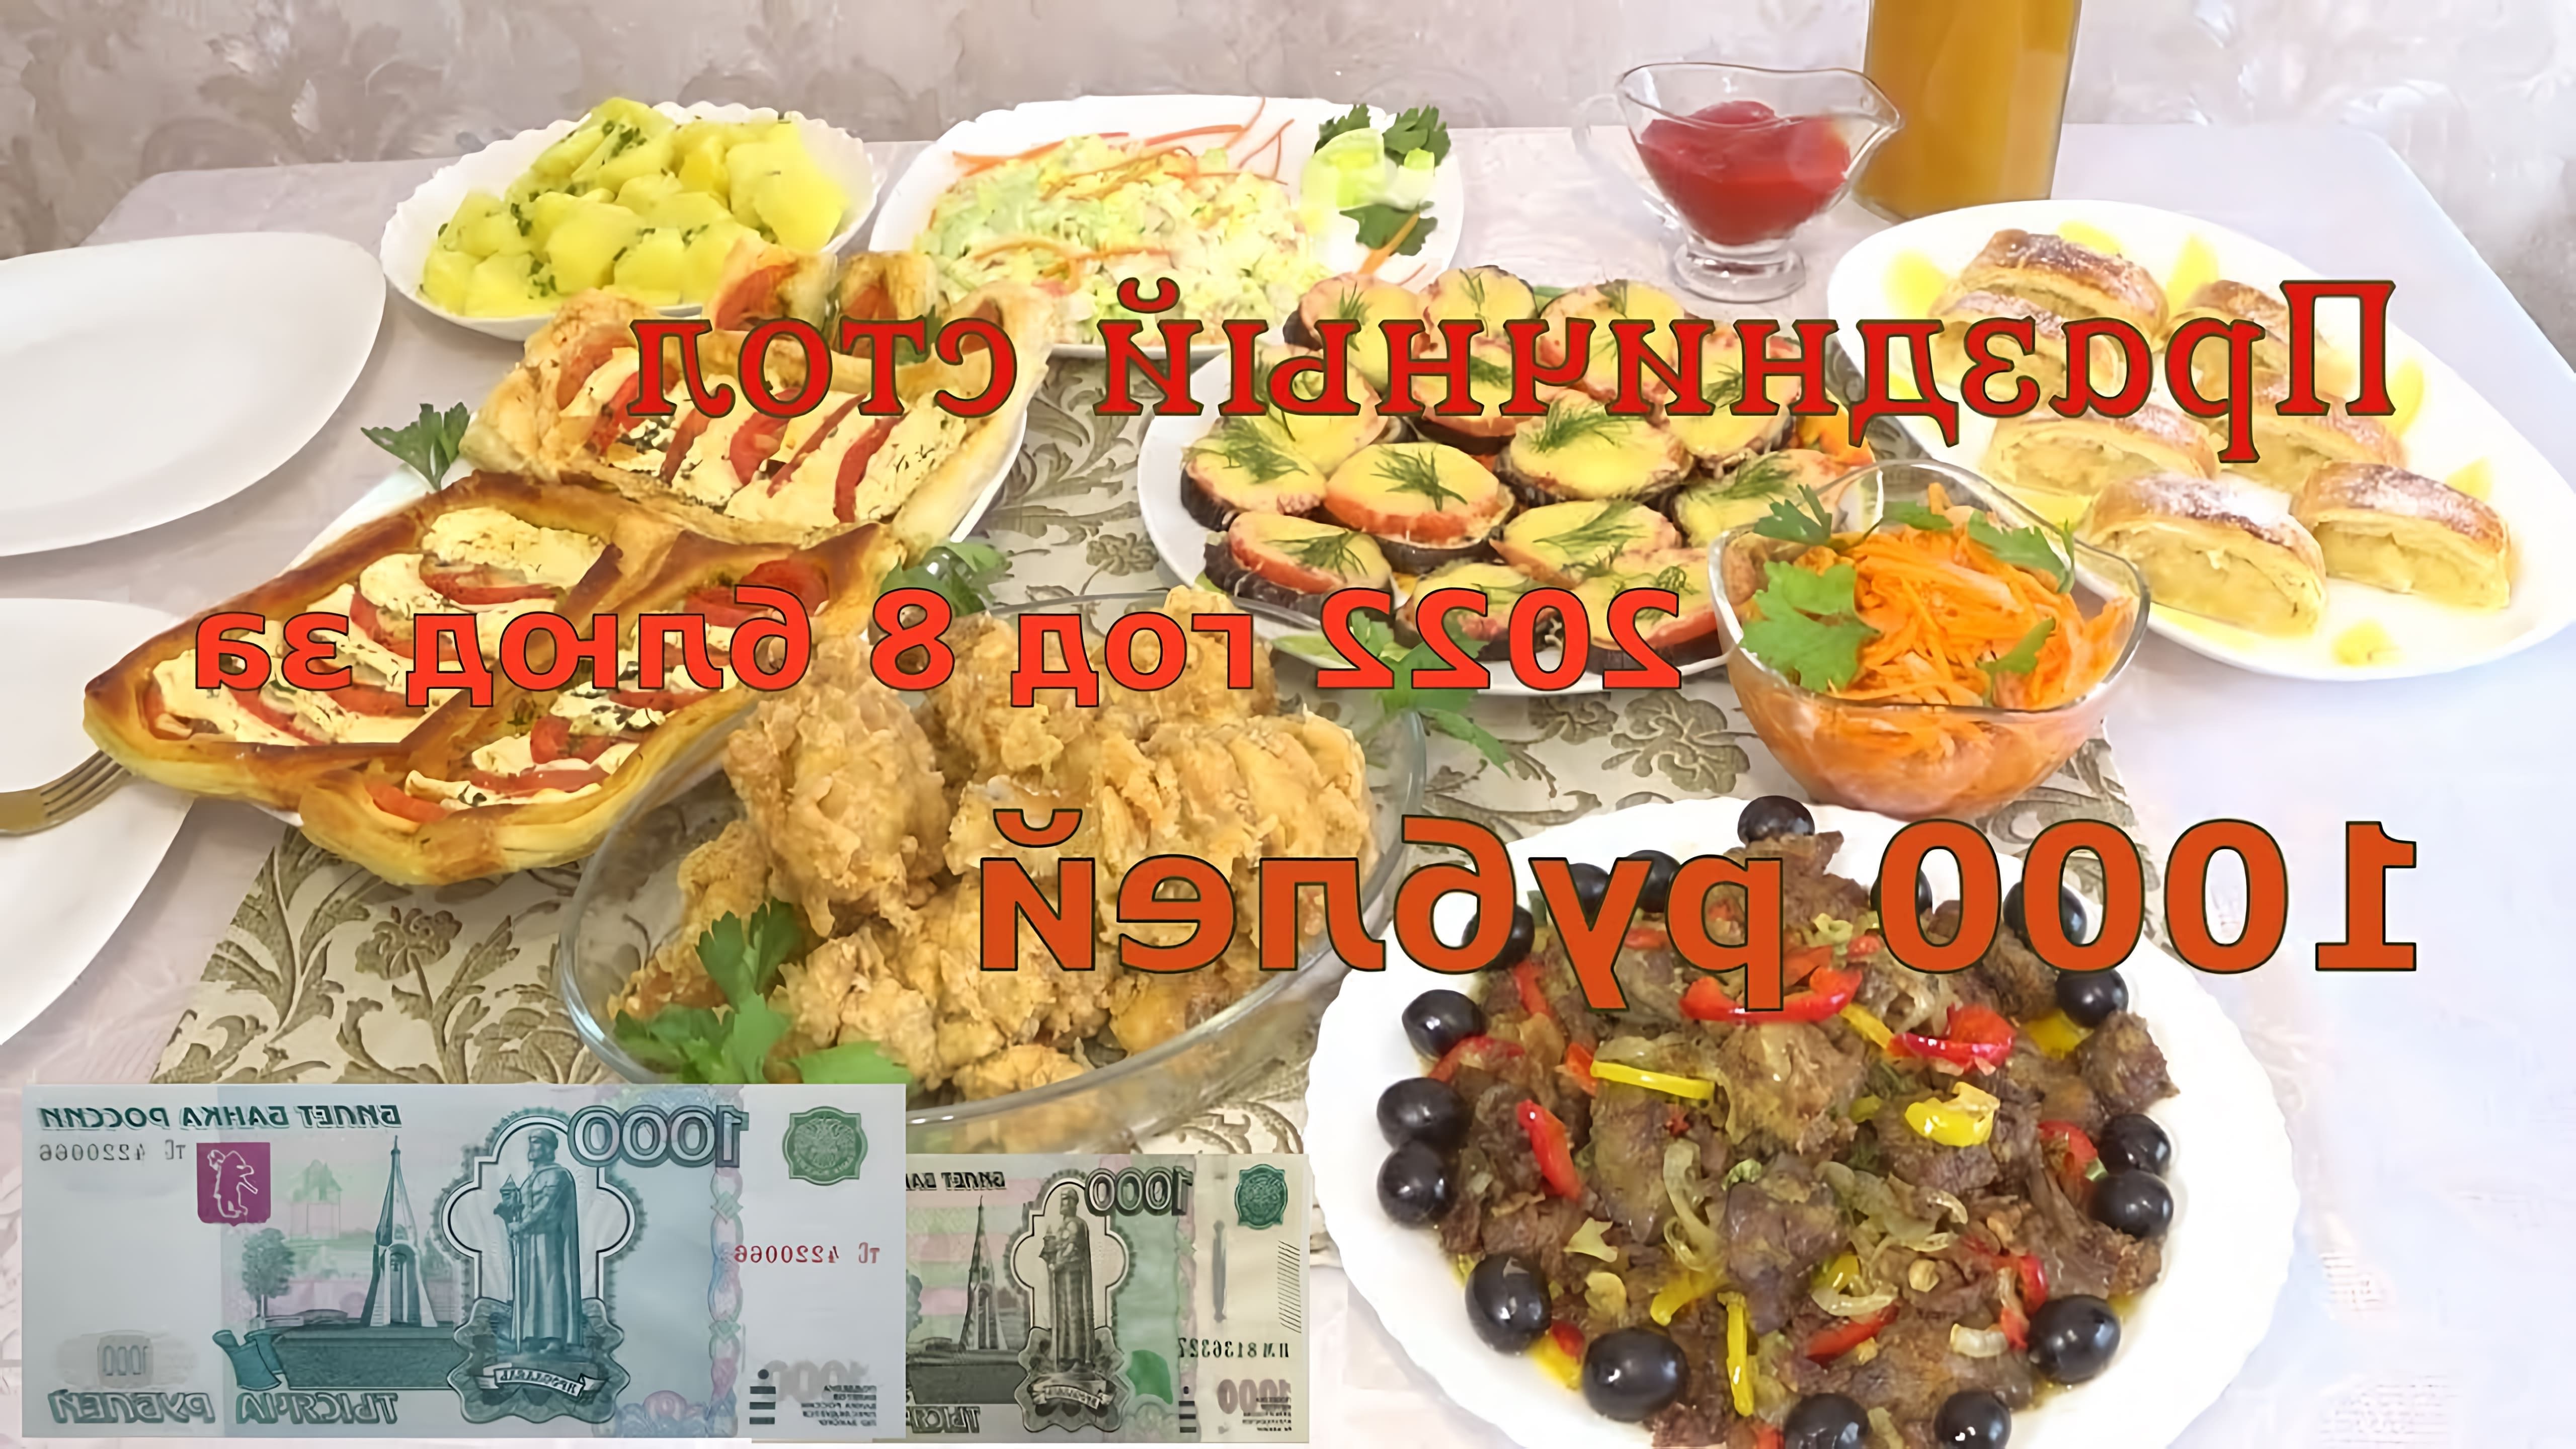 В этом видео показаны рецепты 8 блюд, которые можно приготовить на новогодний стол за 1000 рублей